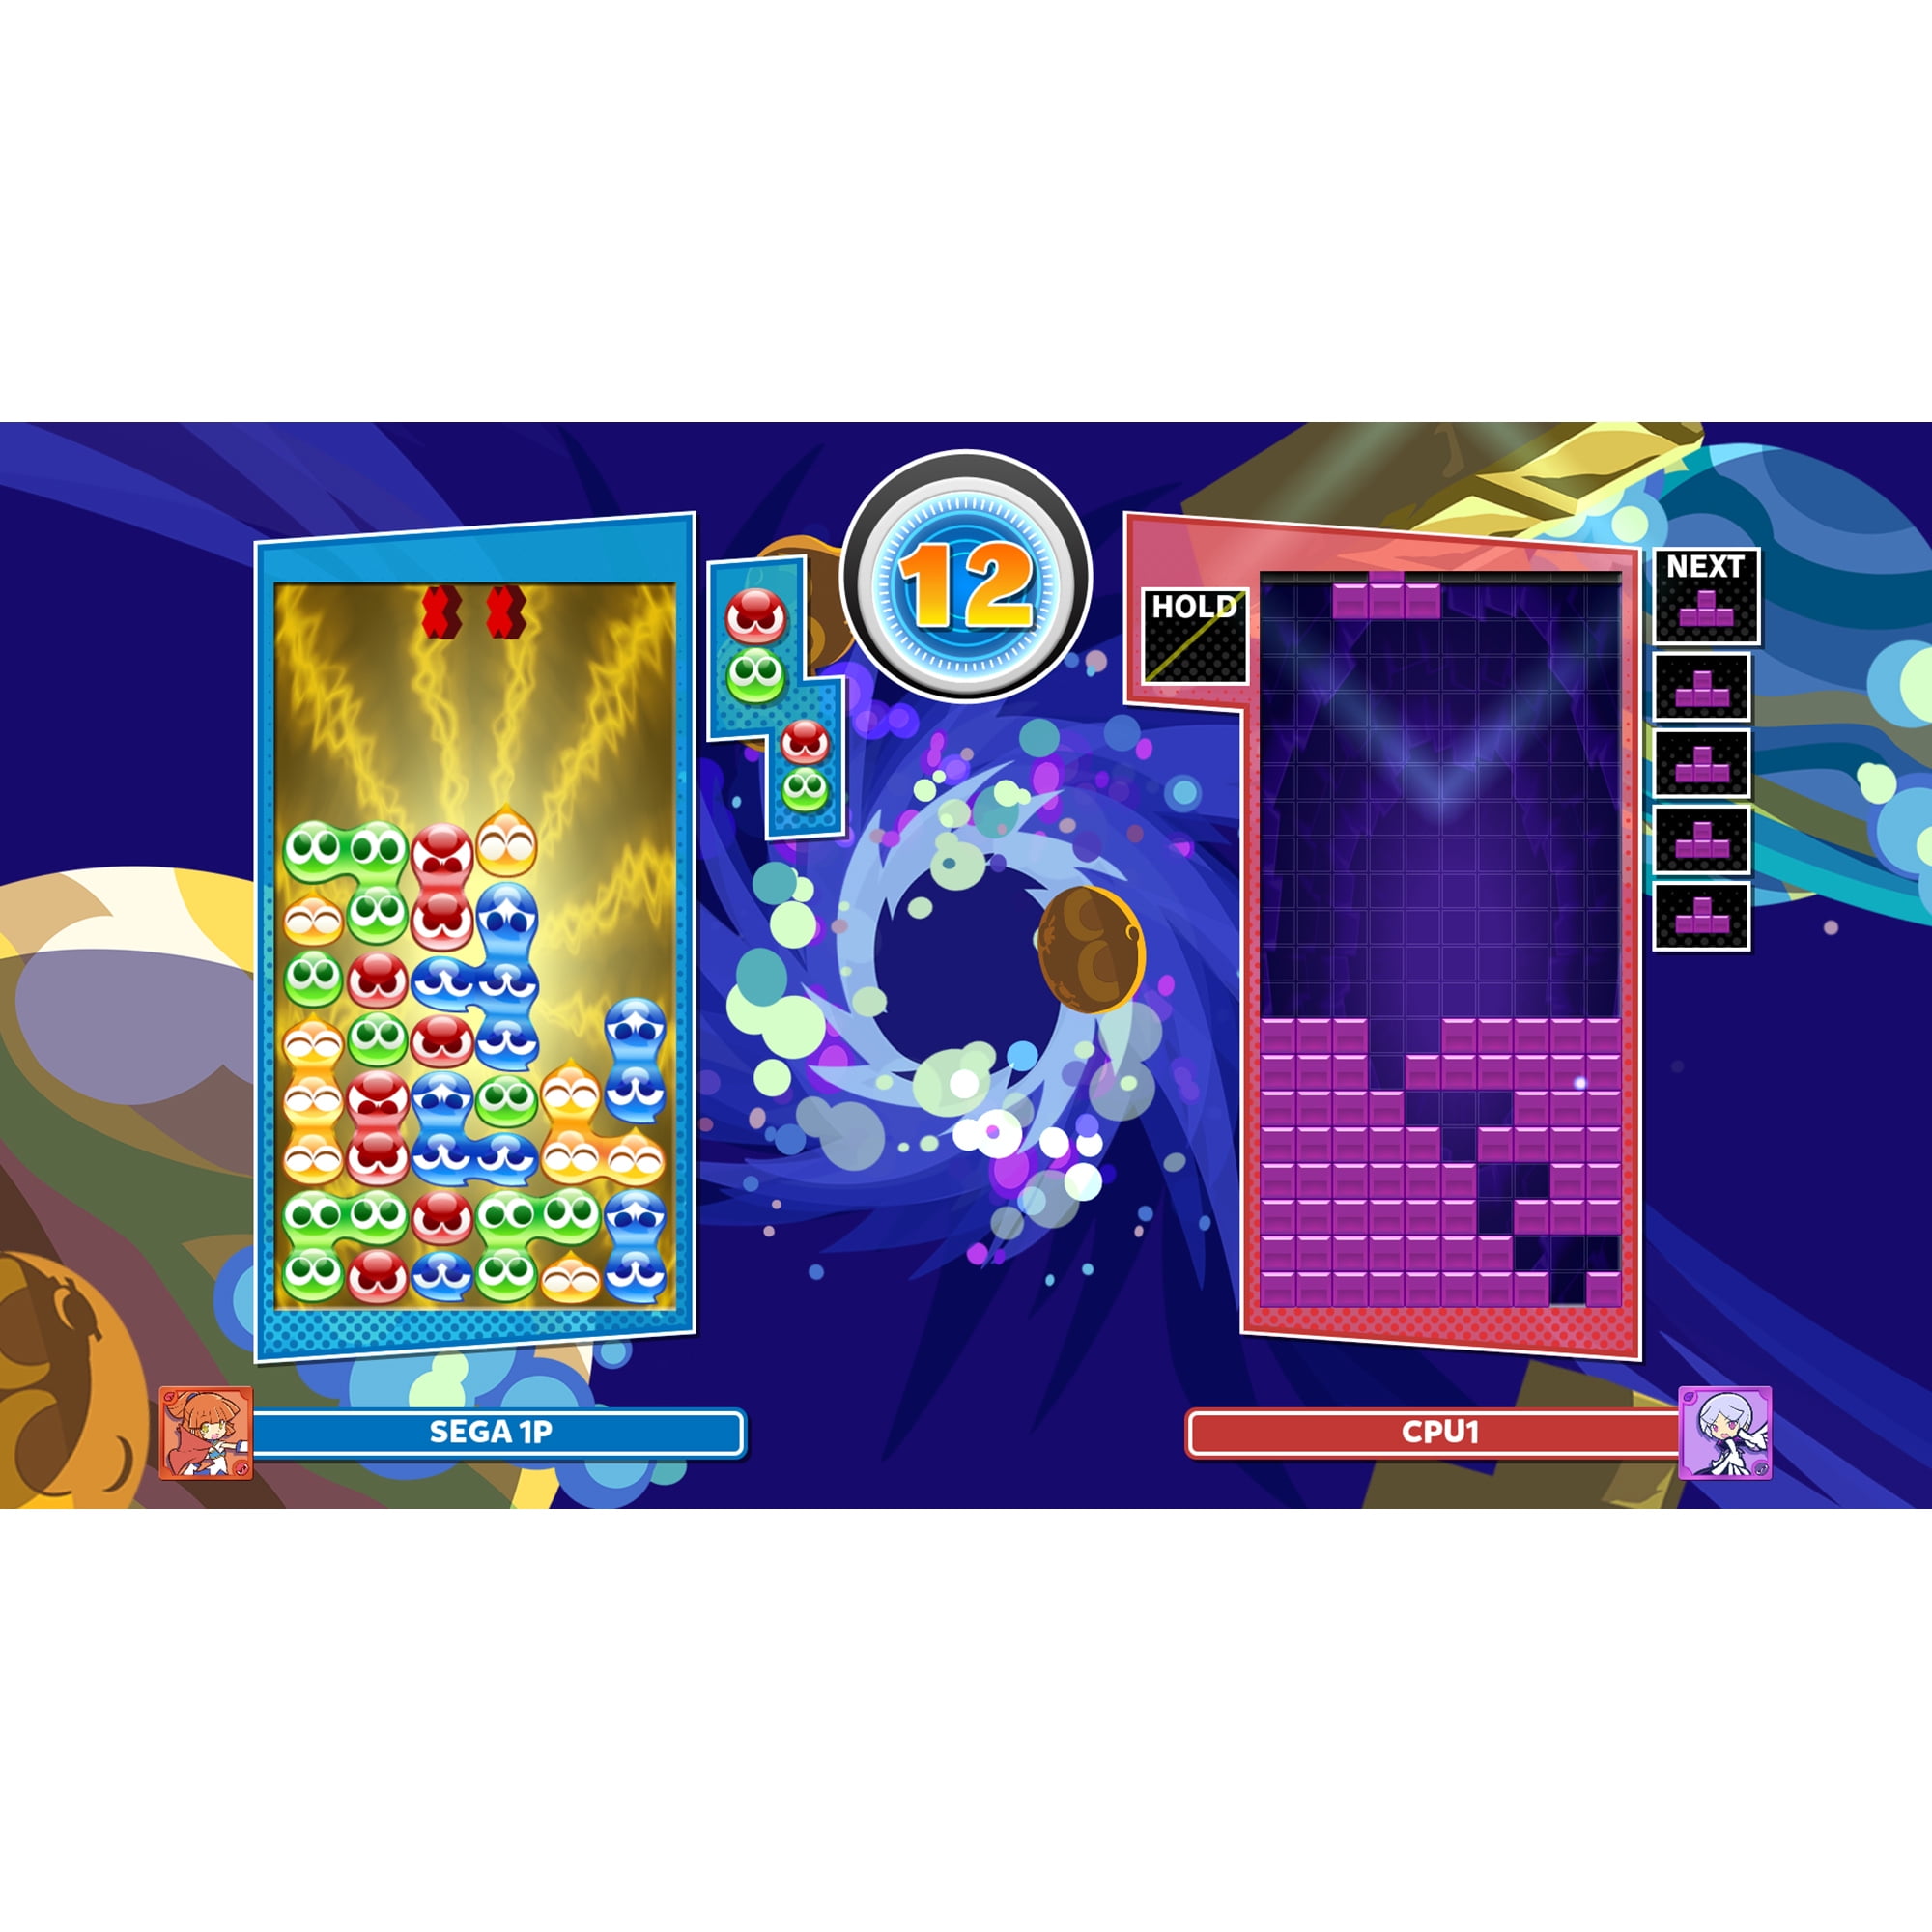 Kort levetid kaldenavn fra nu af Puyo Puyo Tetris 2: Launch Edition, Sega, PlayStation 5 - Walmart.com